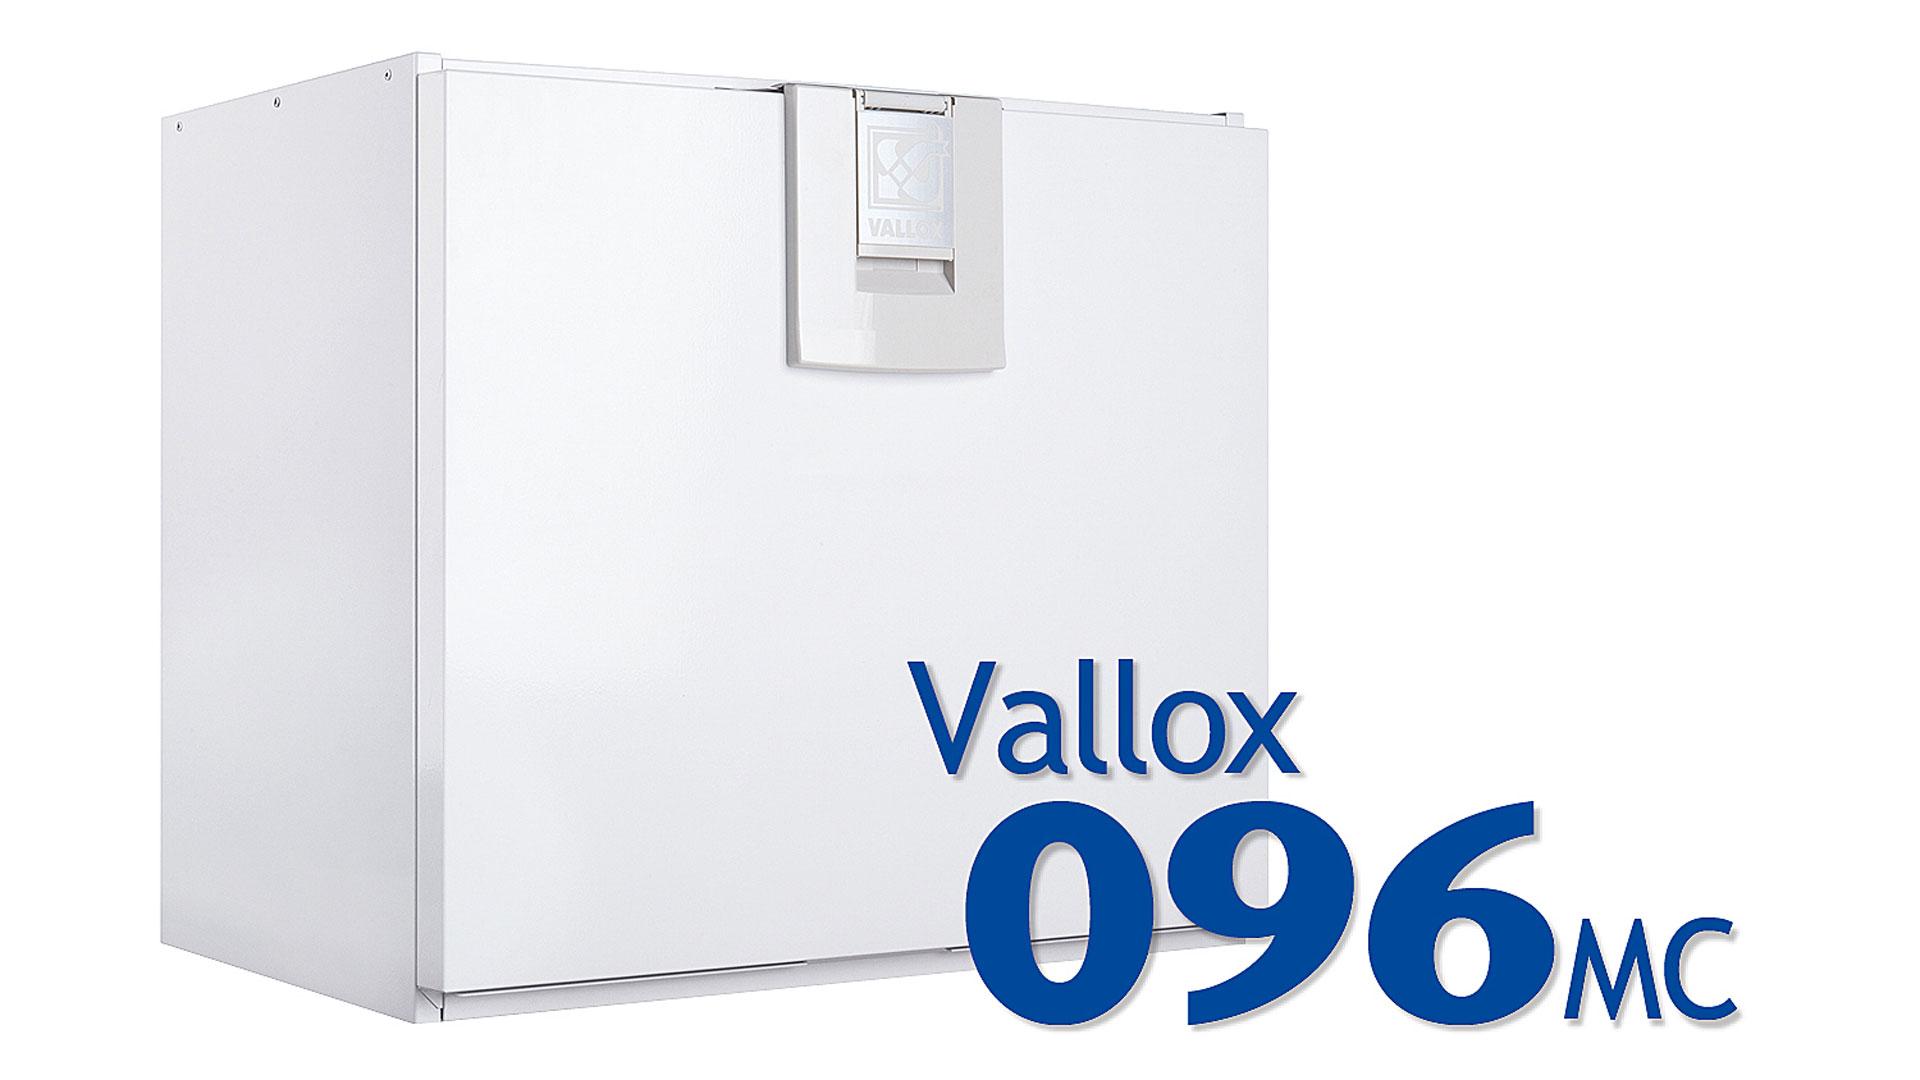 Vallox 096 MC on A+ energialuokan matalaenergiailmanvaihtokone pieniin ja keskisuuriin asuntoihin sekä huviloihin (max 130 m²).